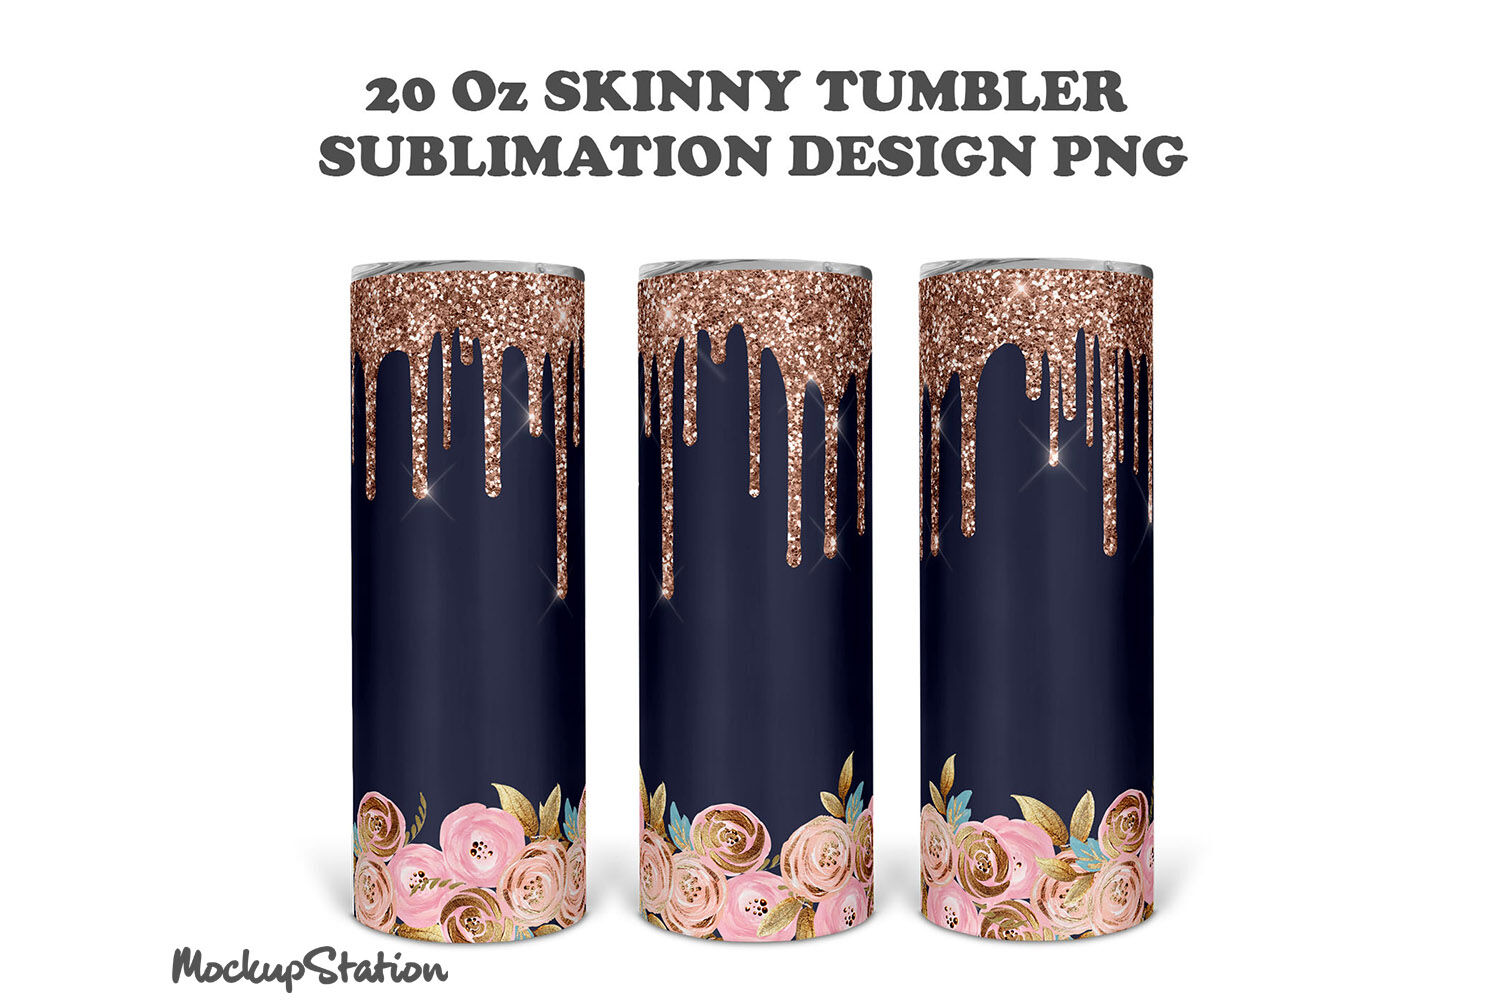 Tumbler design PNG tumbler 20 oz skinny tumbler design digital download sublimation